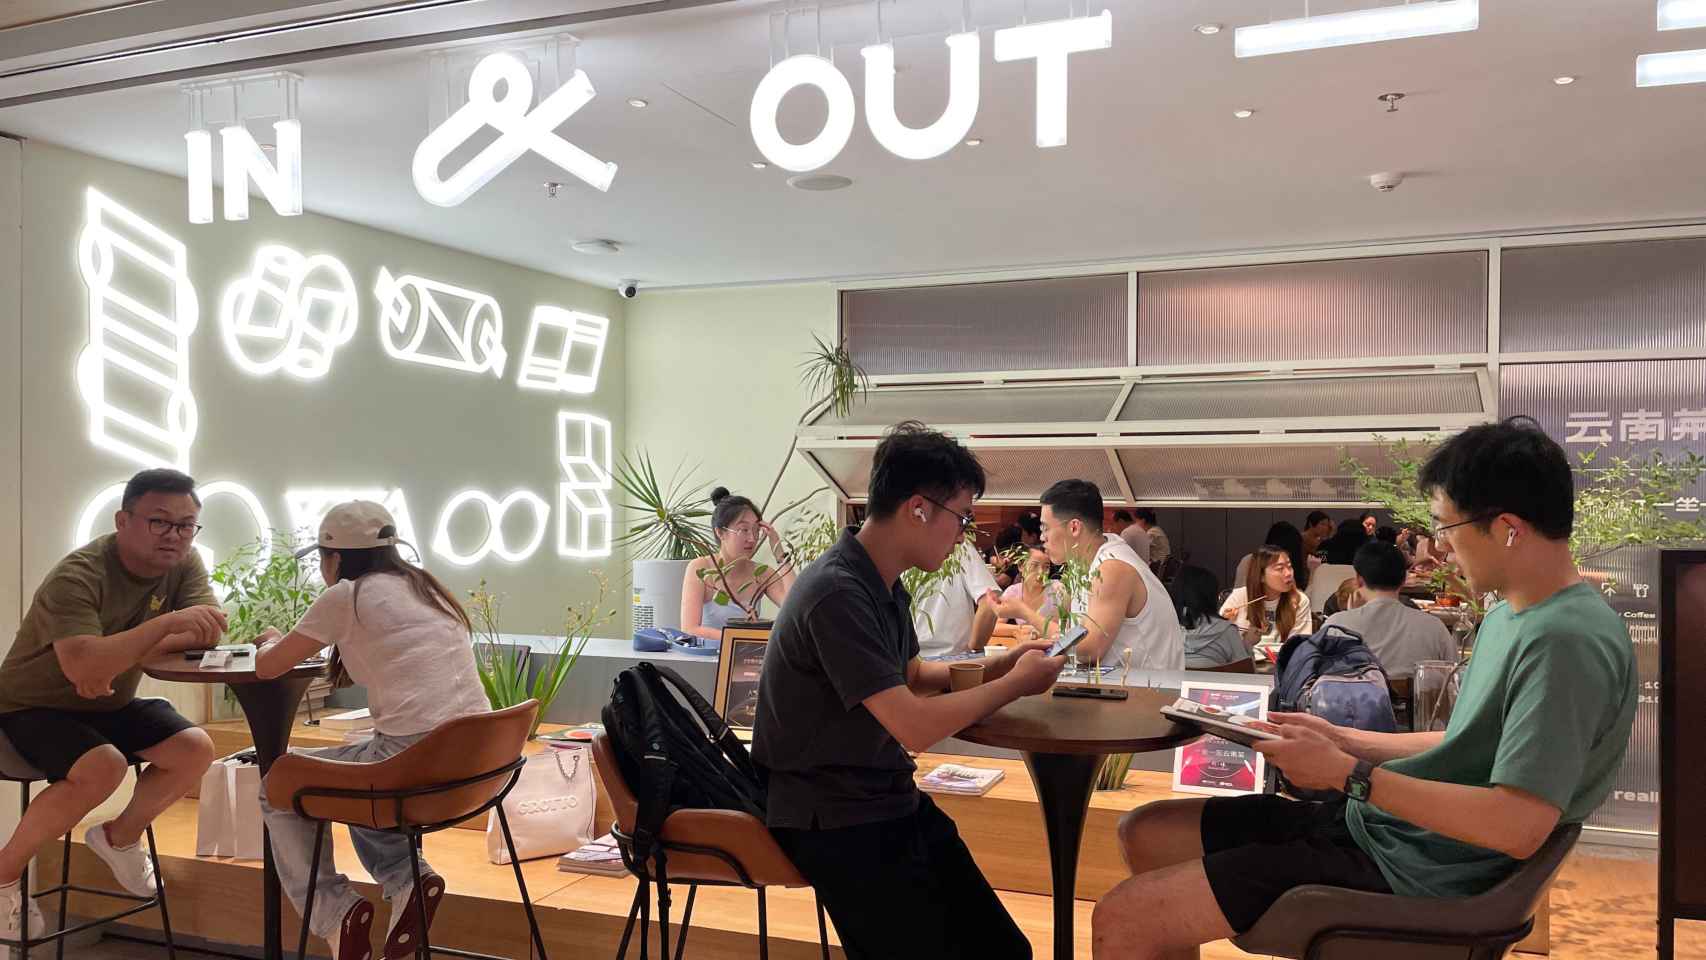 El restaurante Yi Zuo Yi Wang, en una imagen de los propietarios.